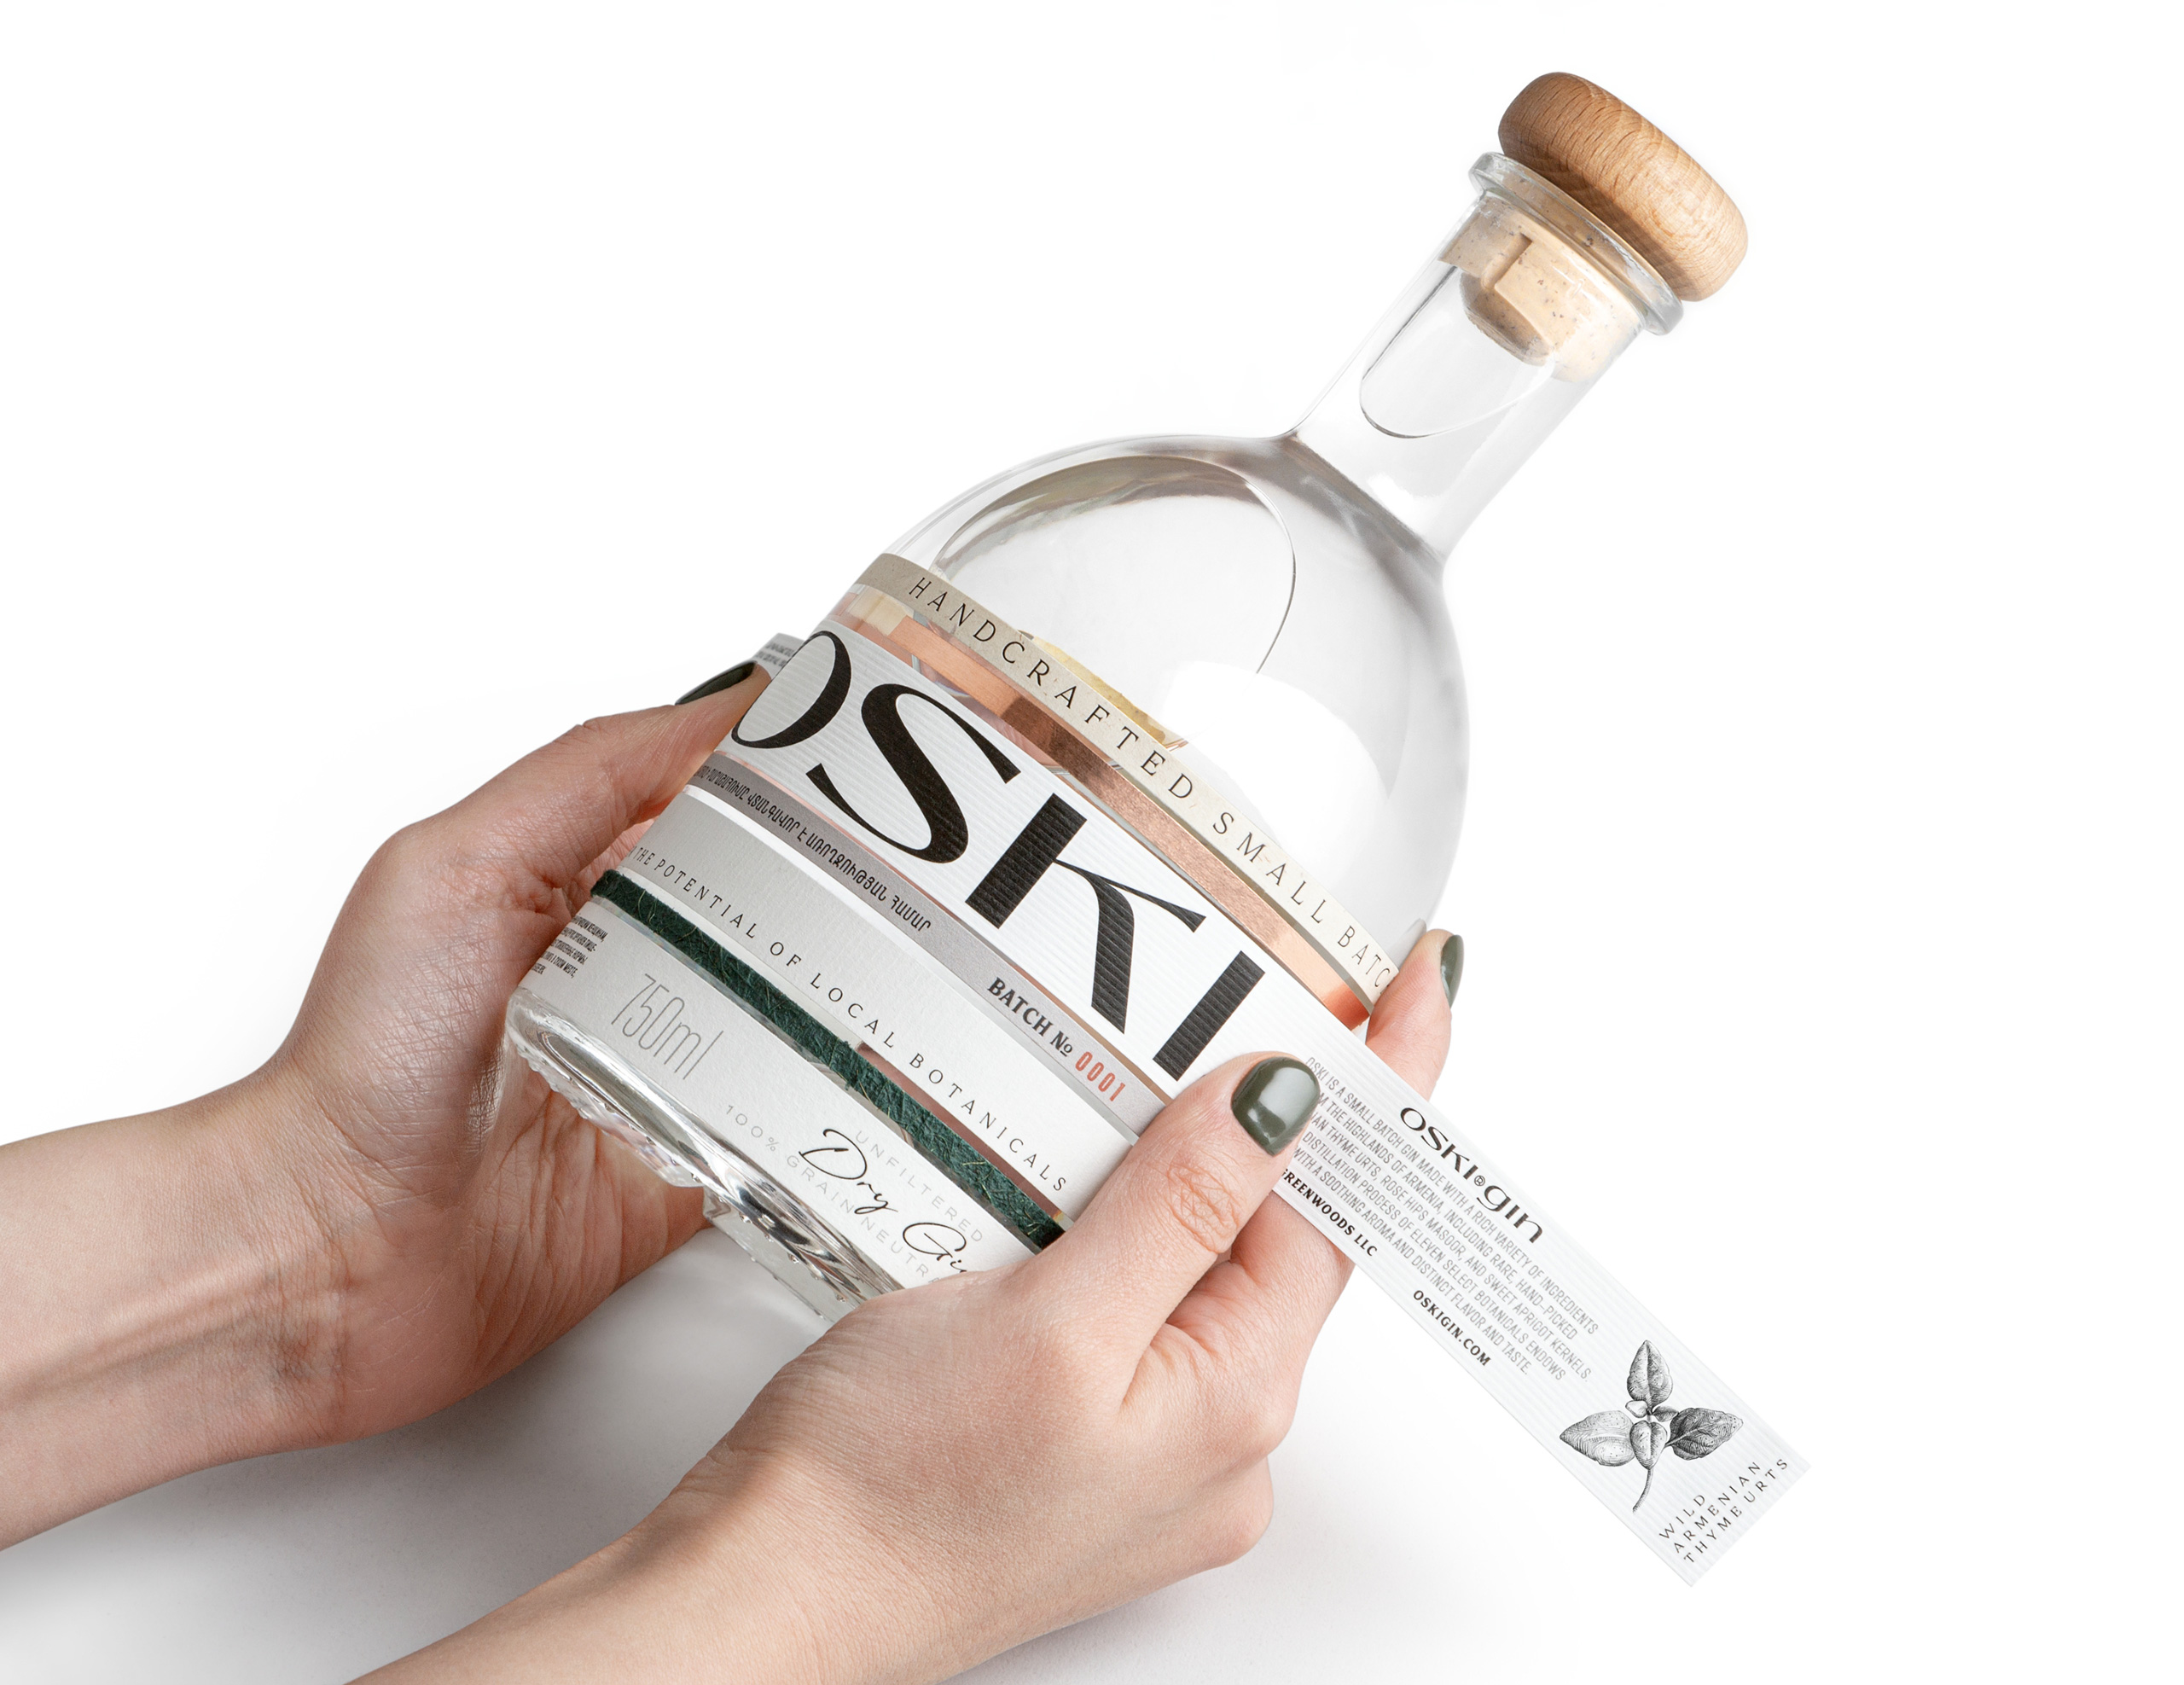 OSKI Gin Packaging Design